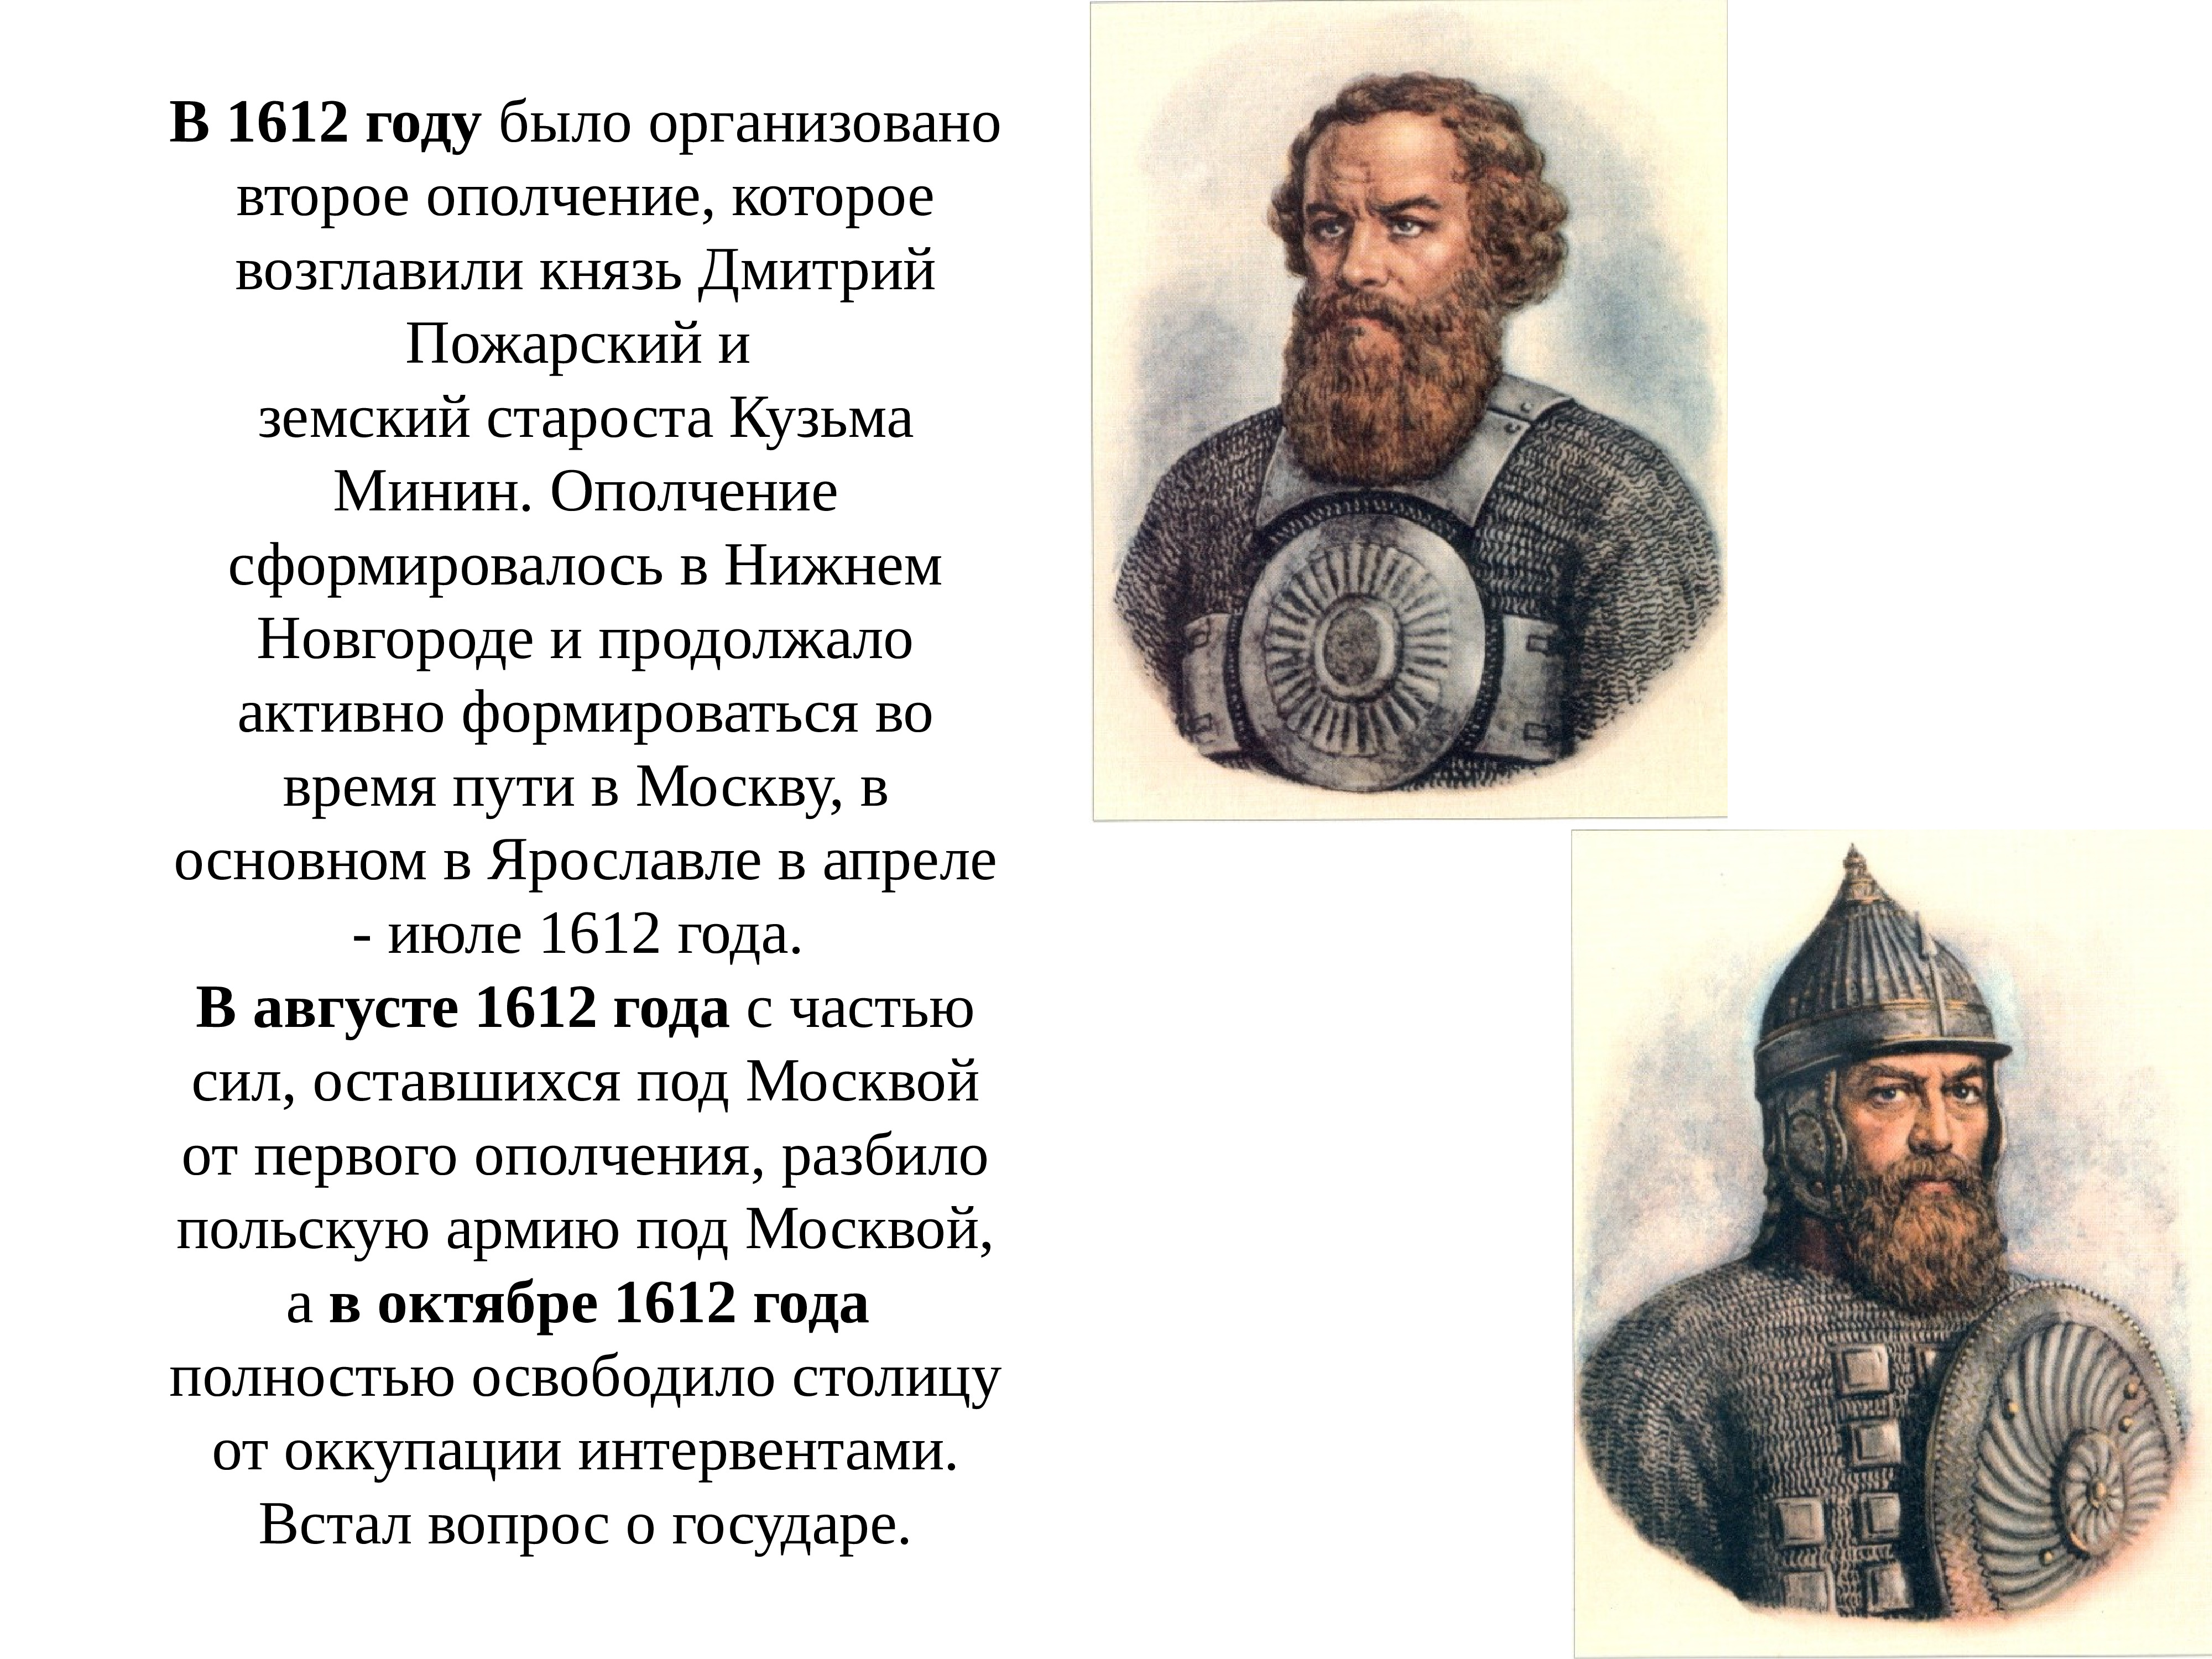 1612 году князь. Ополчение 1612 года Минин и Пожарский. 1612 Год Минин и Пожарский кратко.